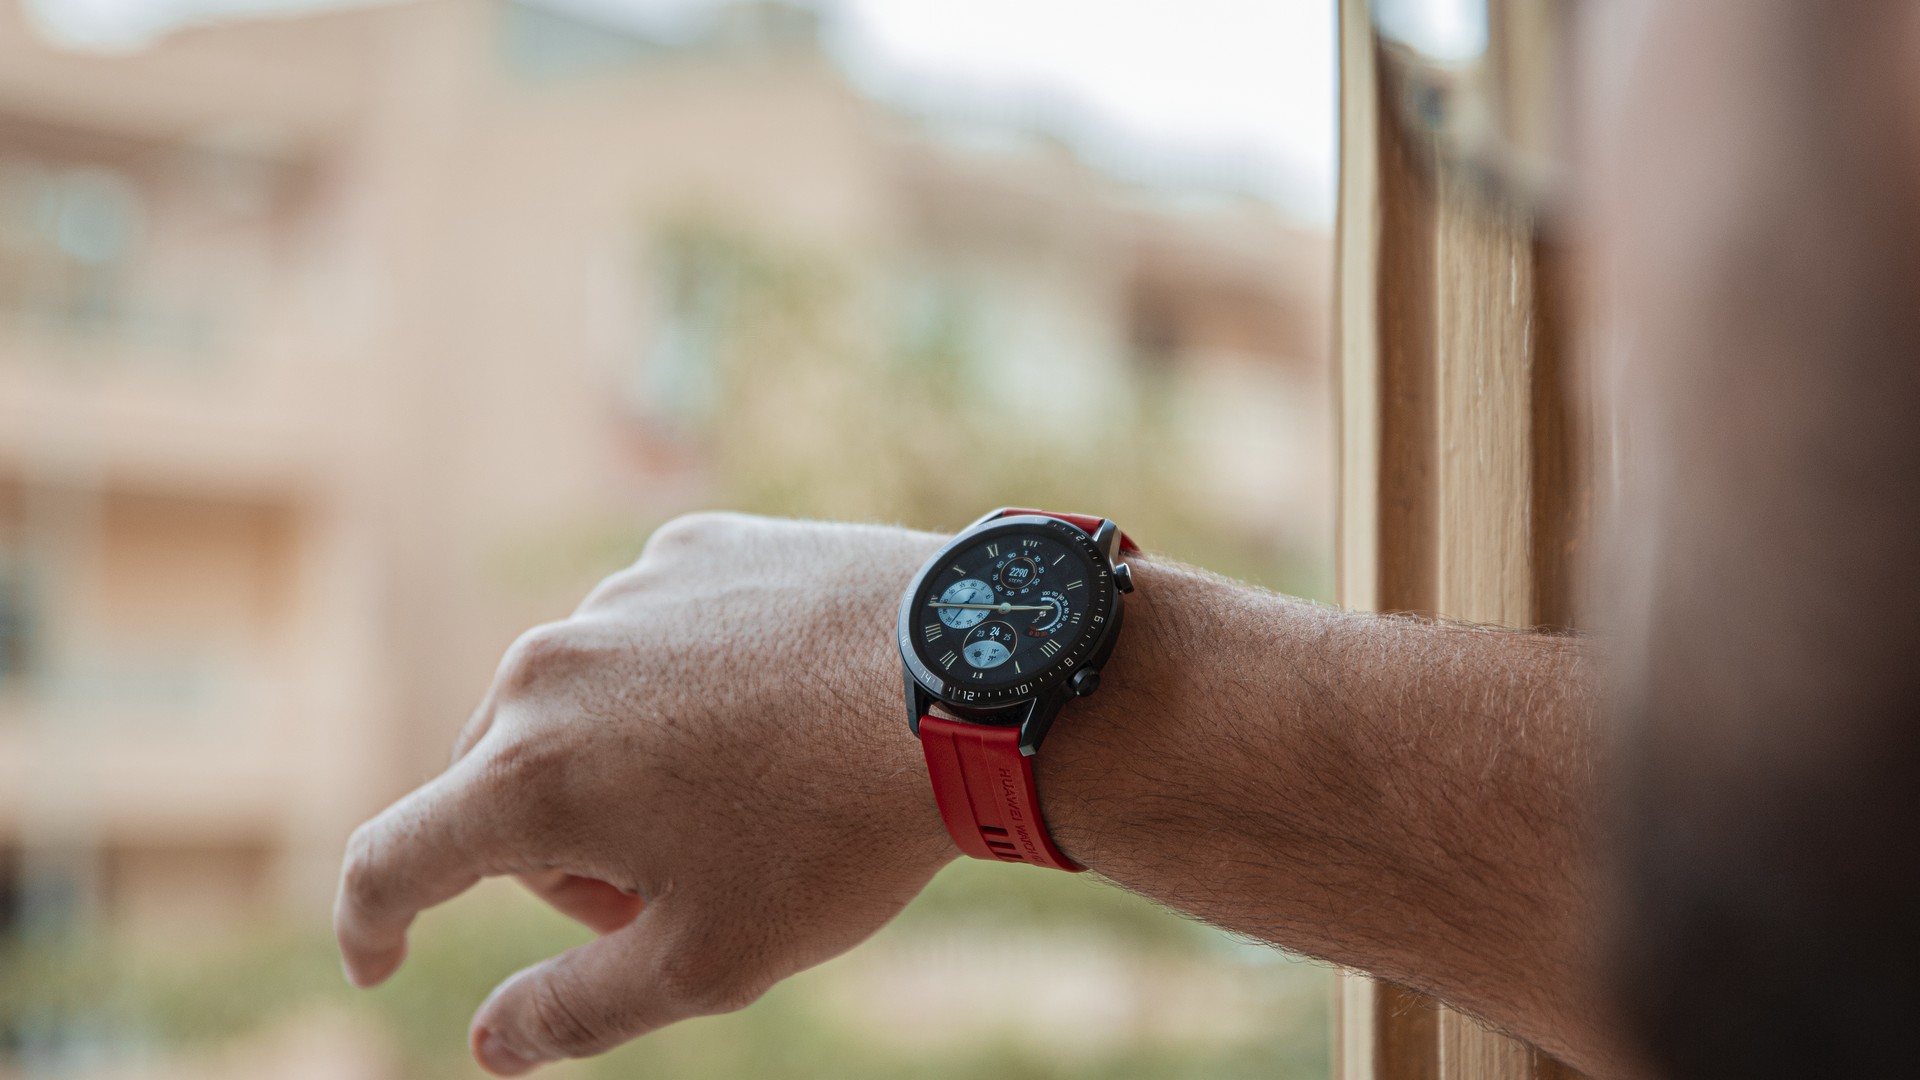 تجربتنا لساعة هواوي الذكية Huawei Watch GT 2